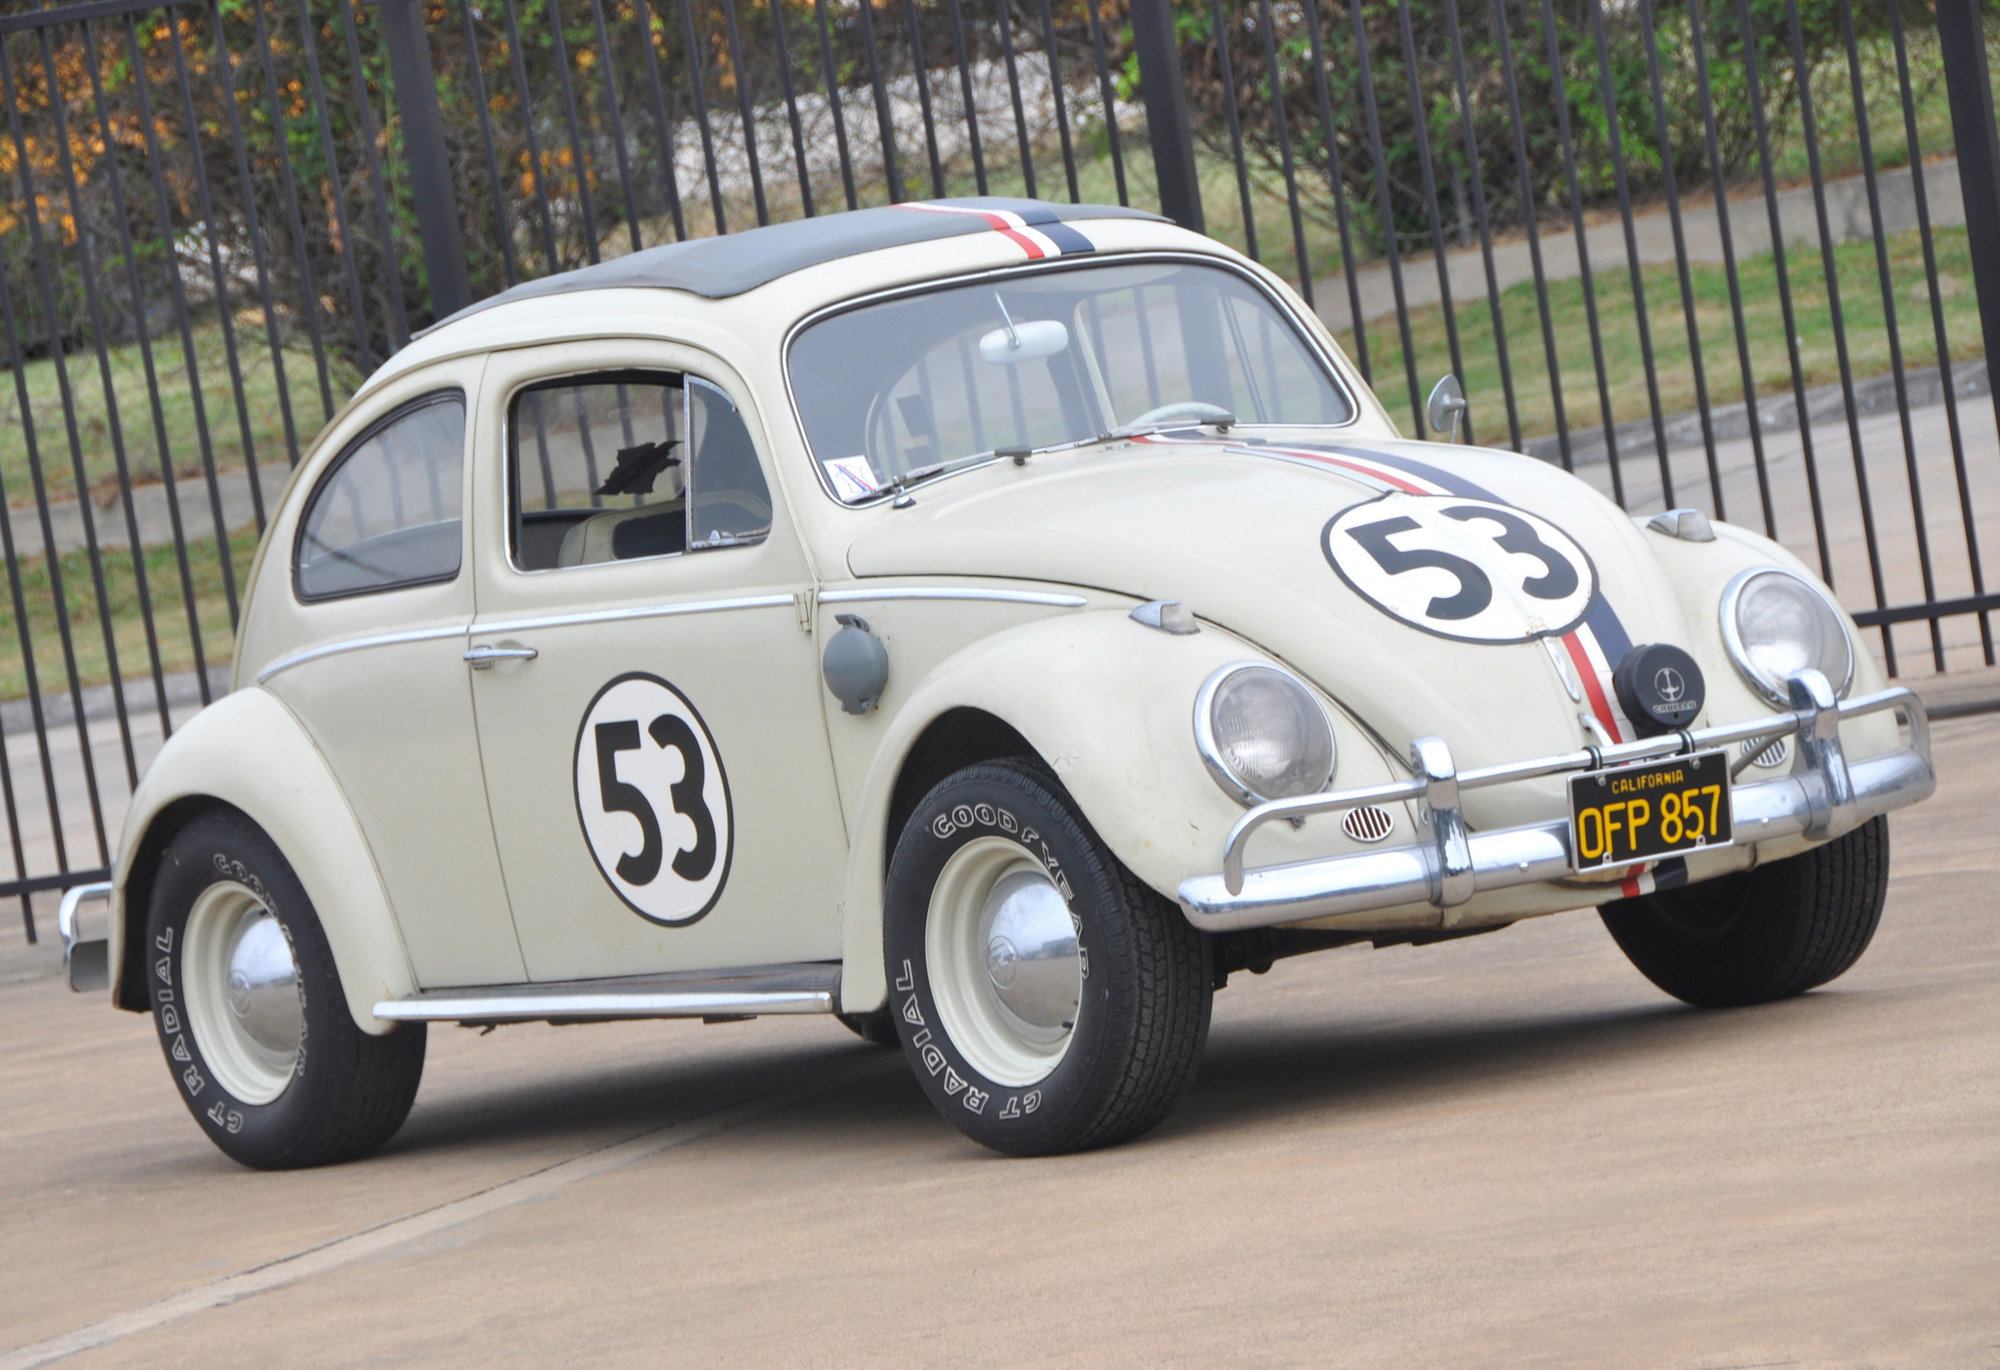 Slavný Herbie se stal nejdražším Broukem, který byl kdy prodán